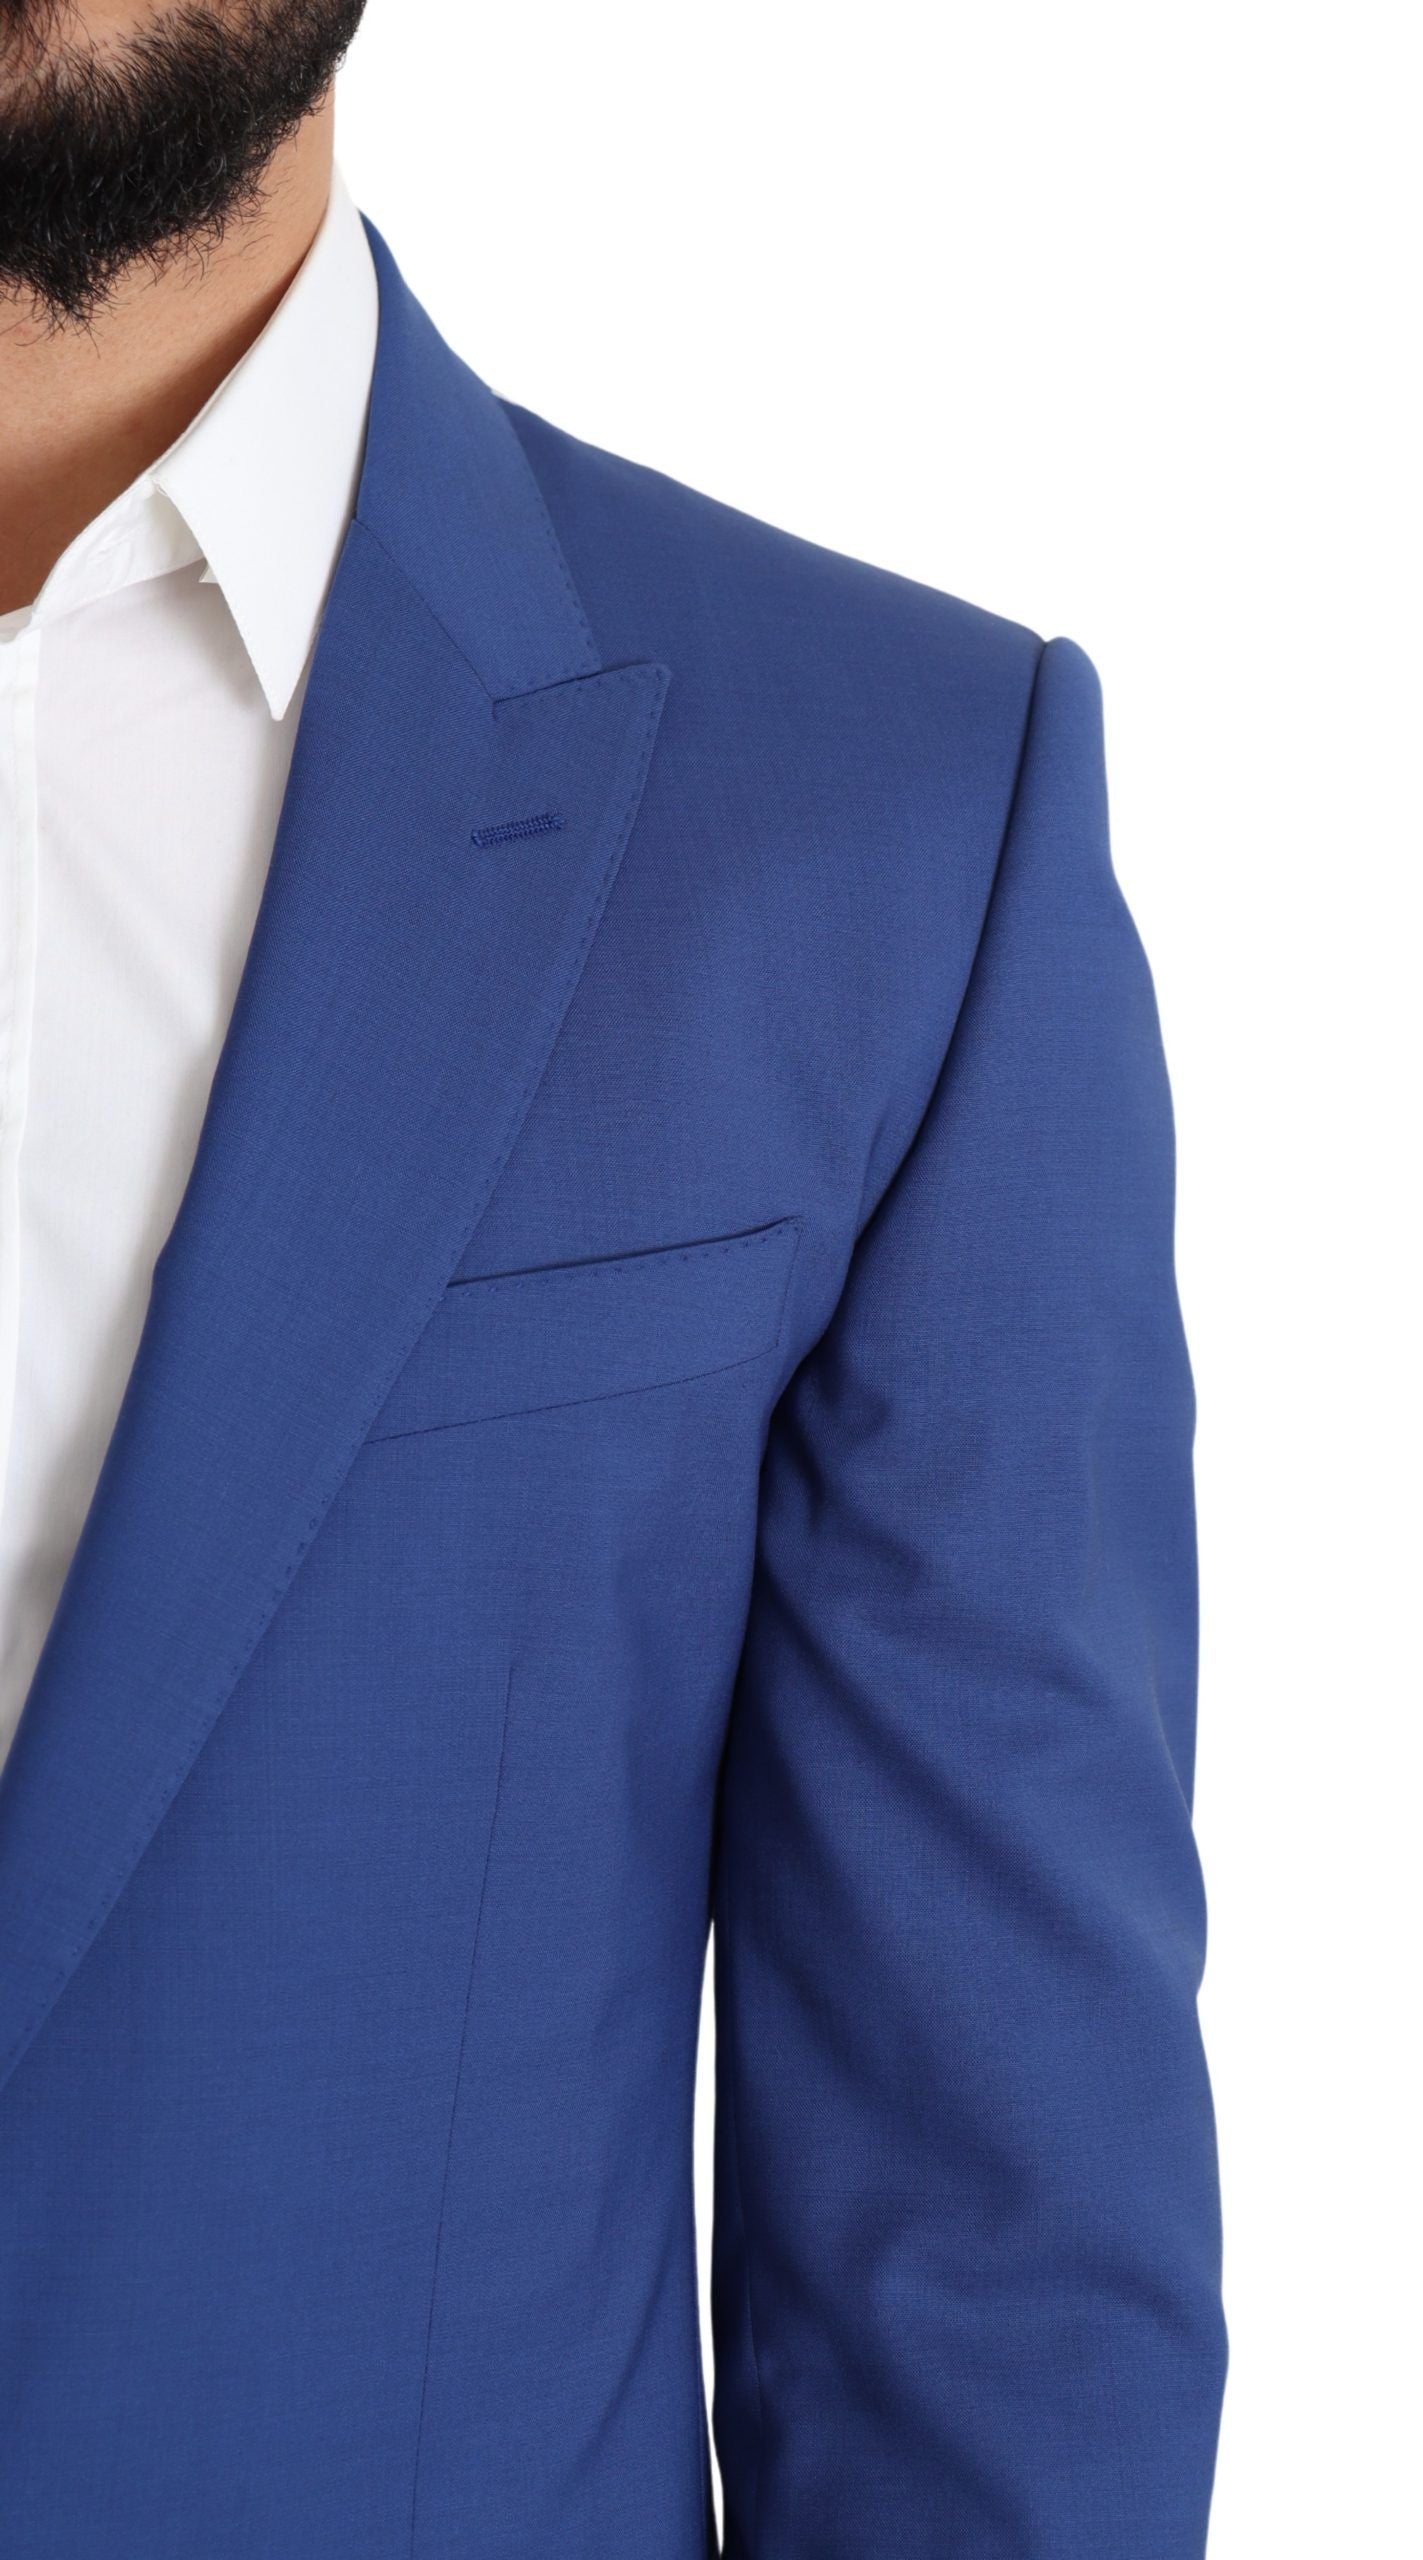 Exquisite Blue Wool Martini Blazer Jacket